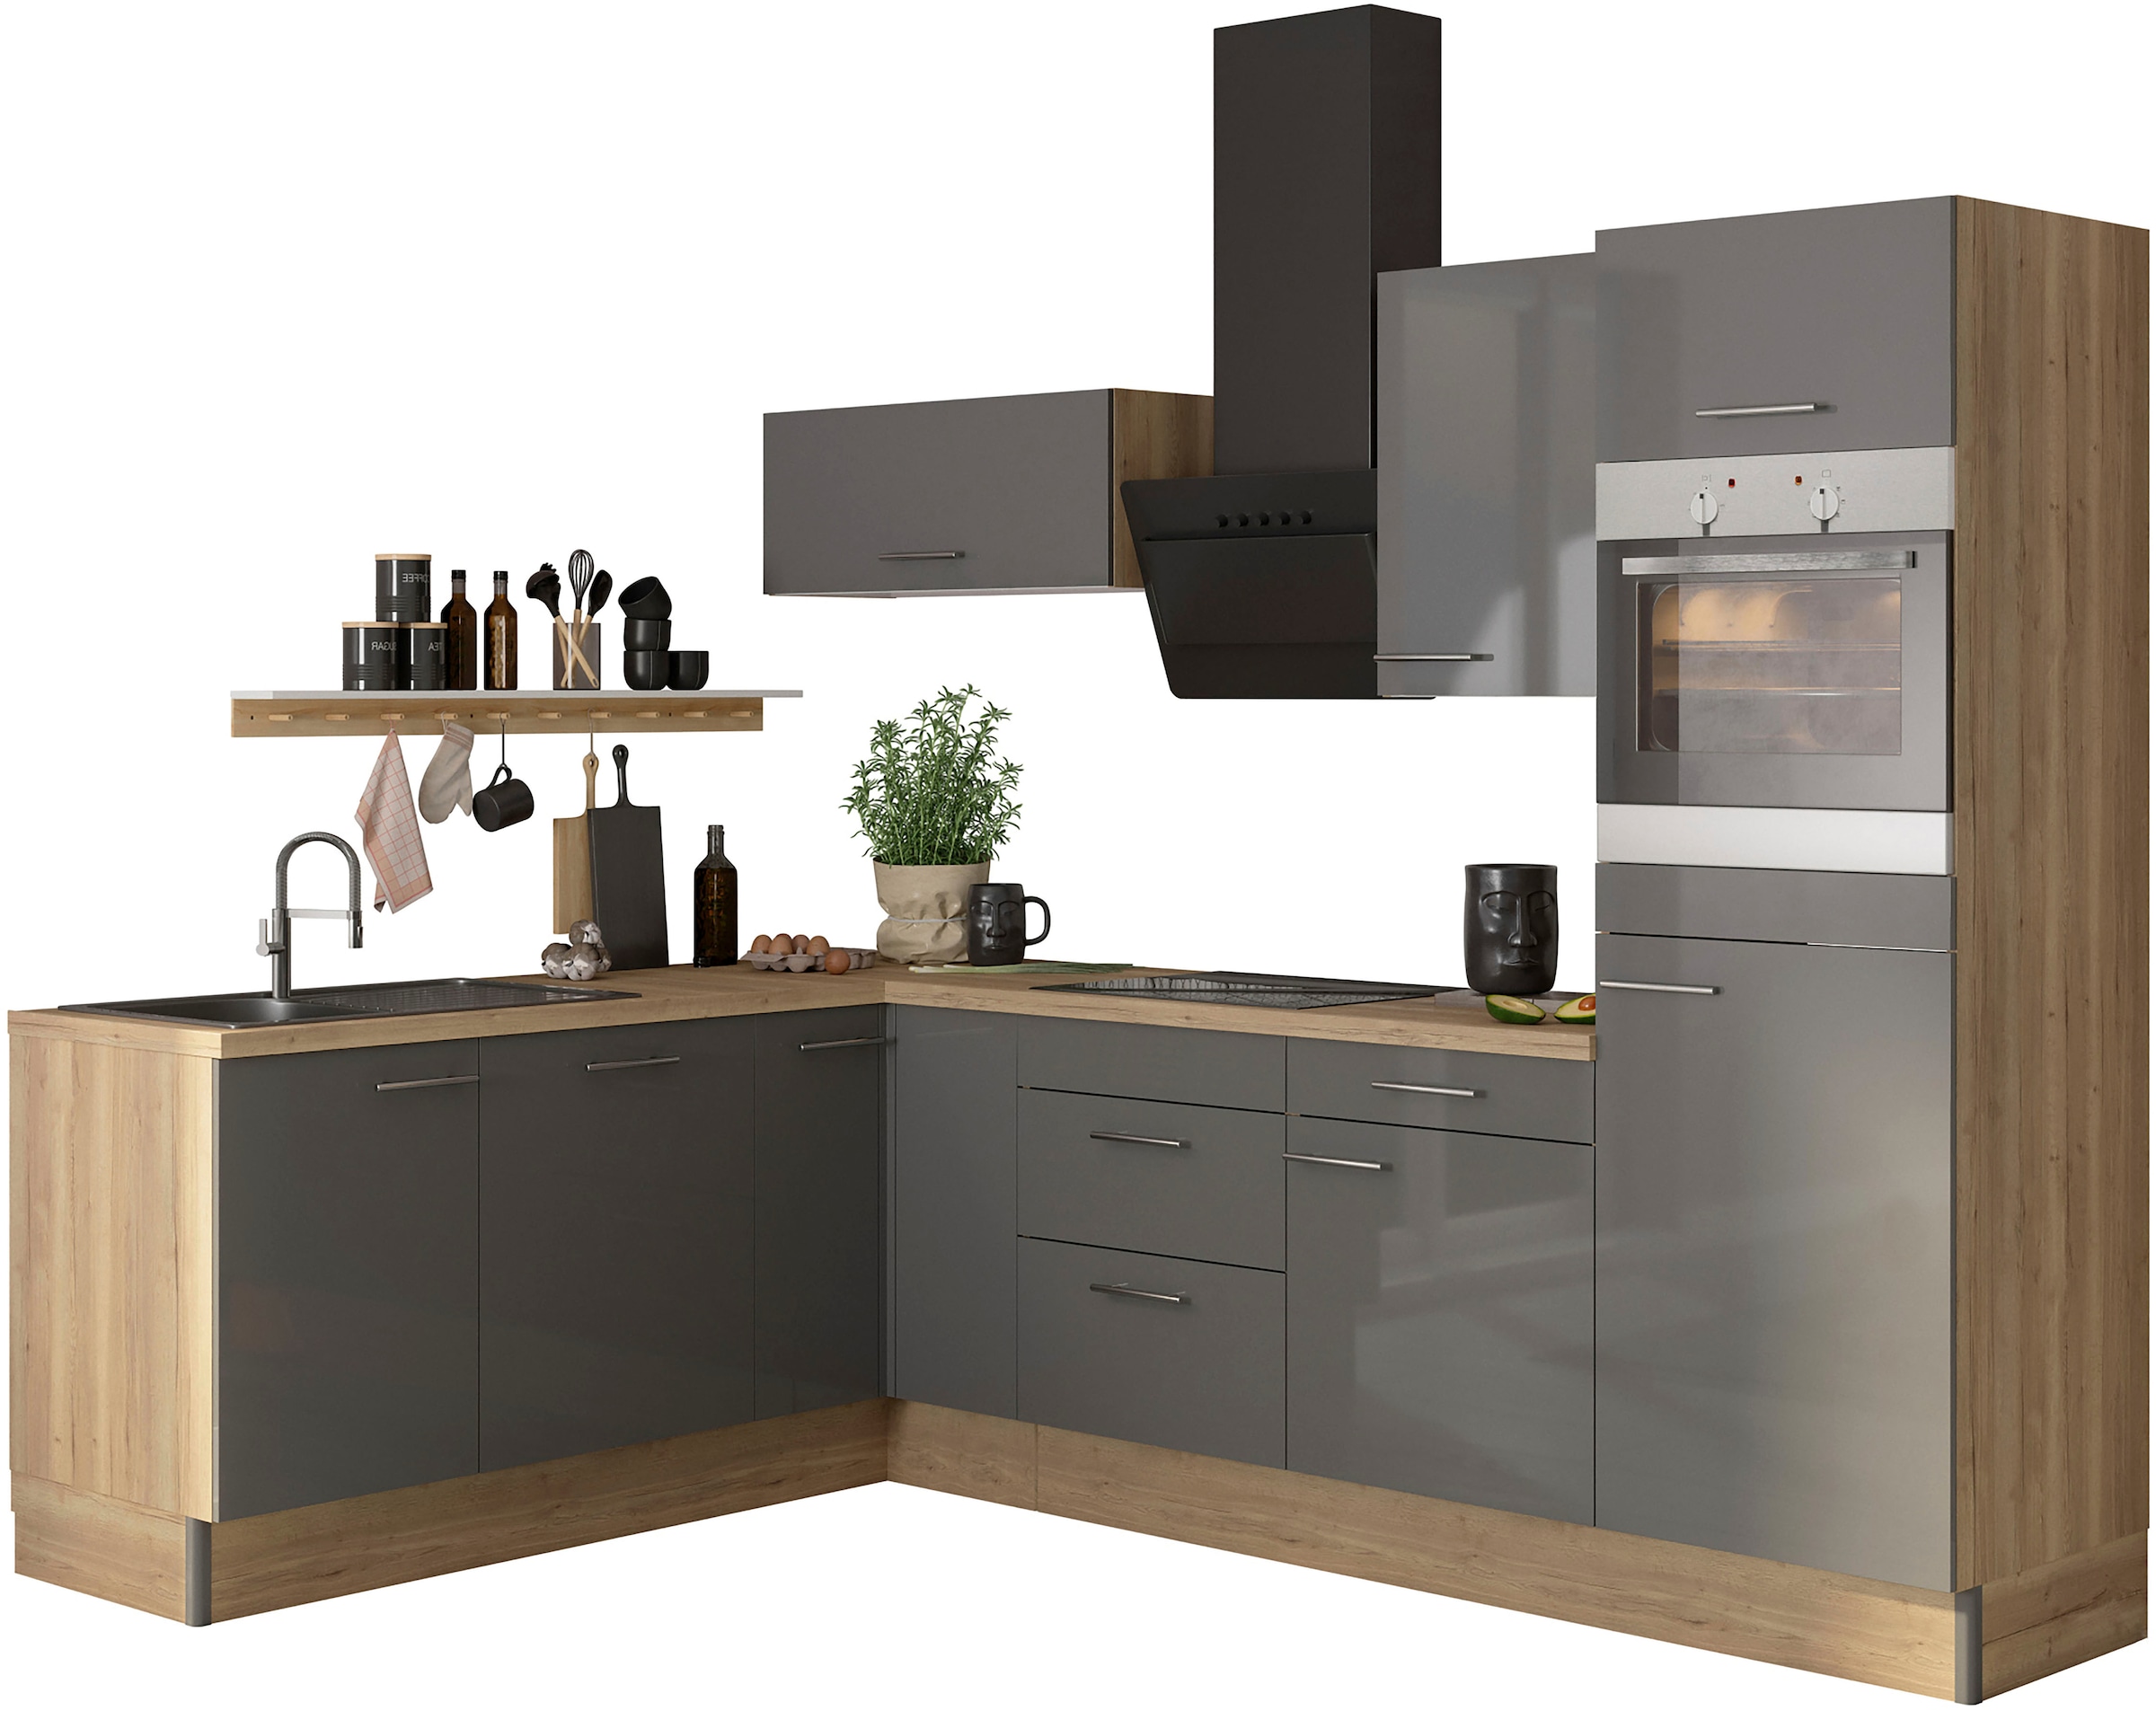 OPTIFIT Küche "Klara", 200 x 270 cm breit, wahlweise mit E-Geräten